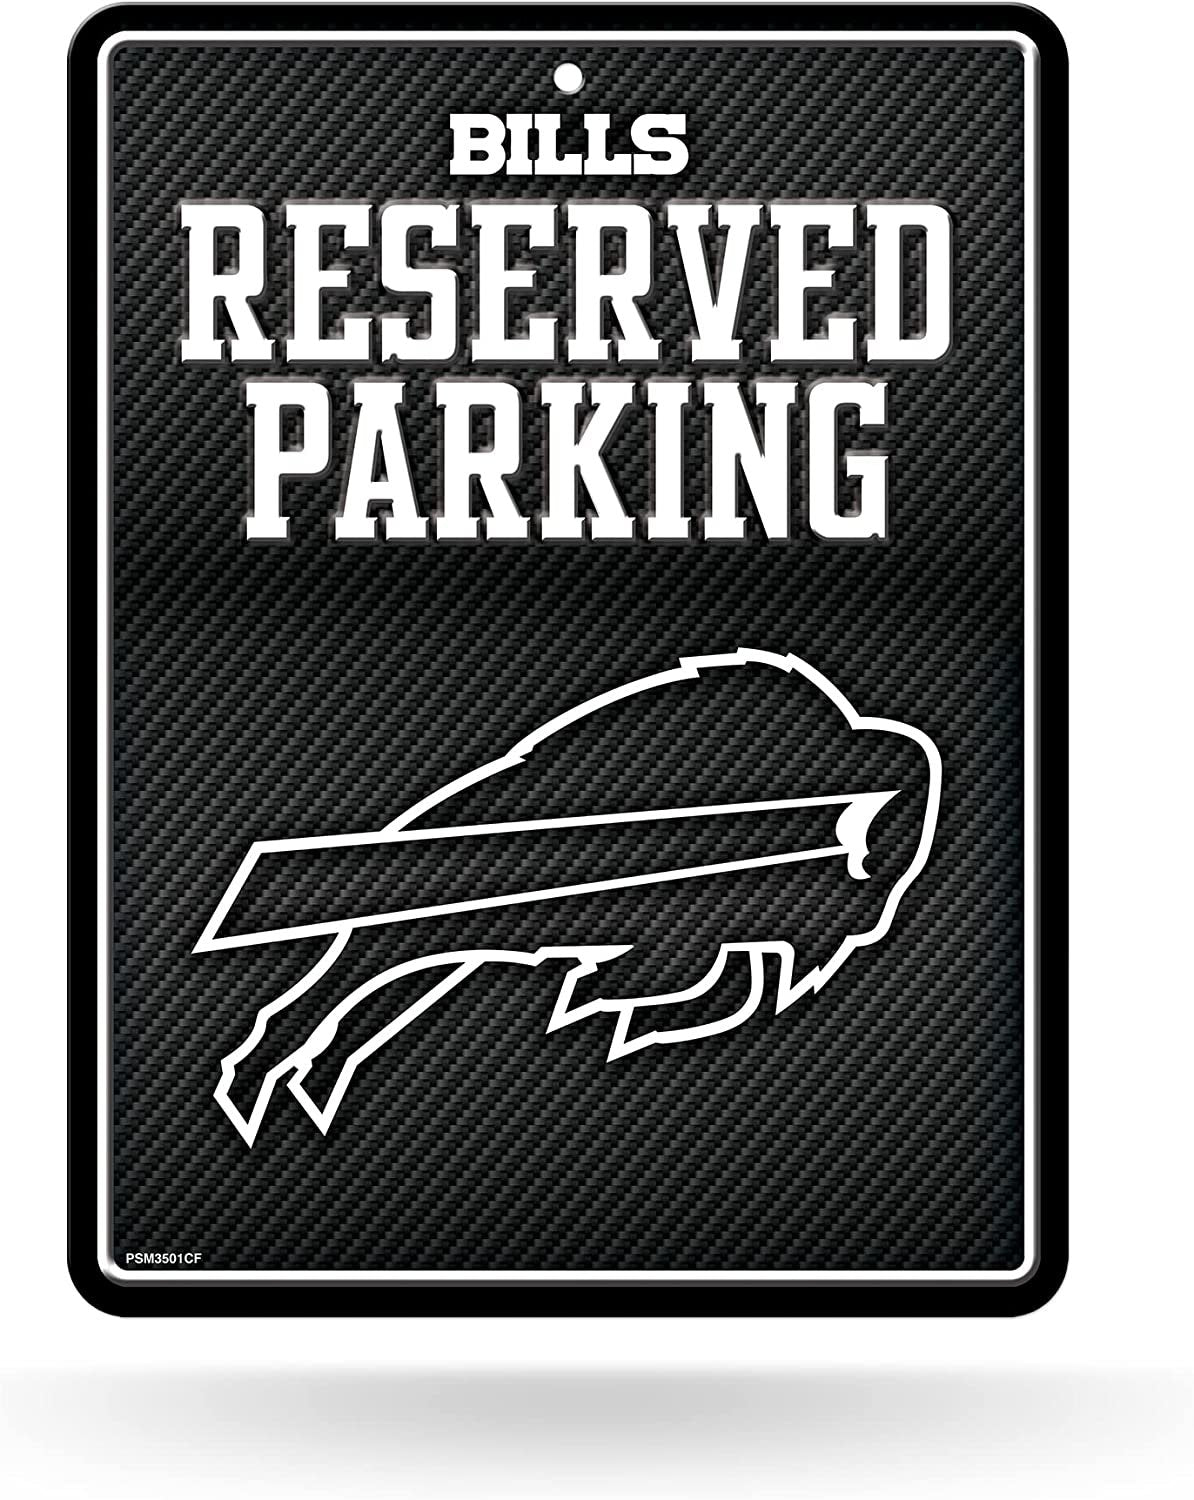 Buffalo Bills Metal Parking Novelty Wall Sign 8.5 x 11 Inch Carbon Fiber Design